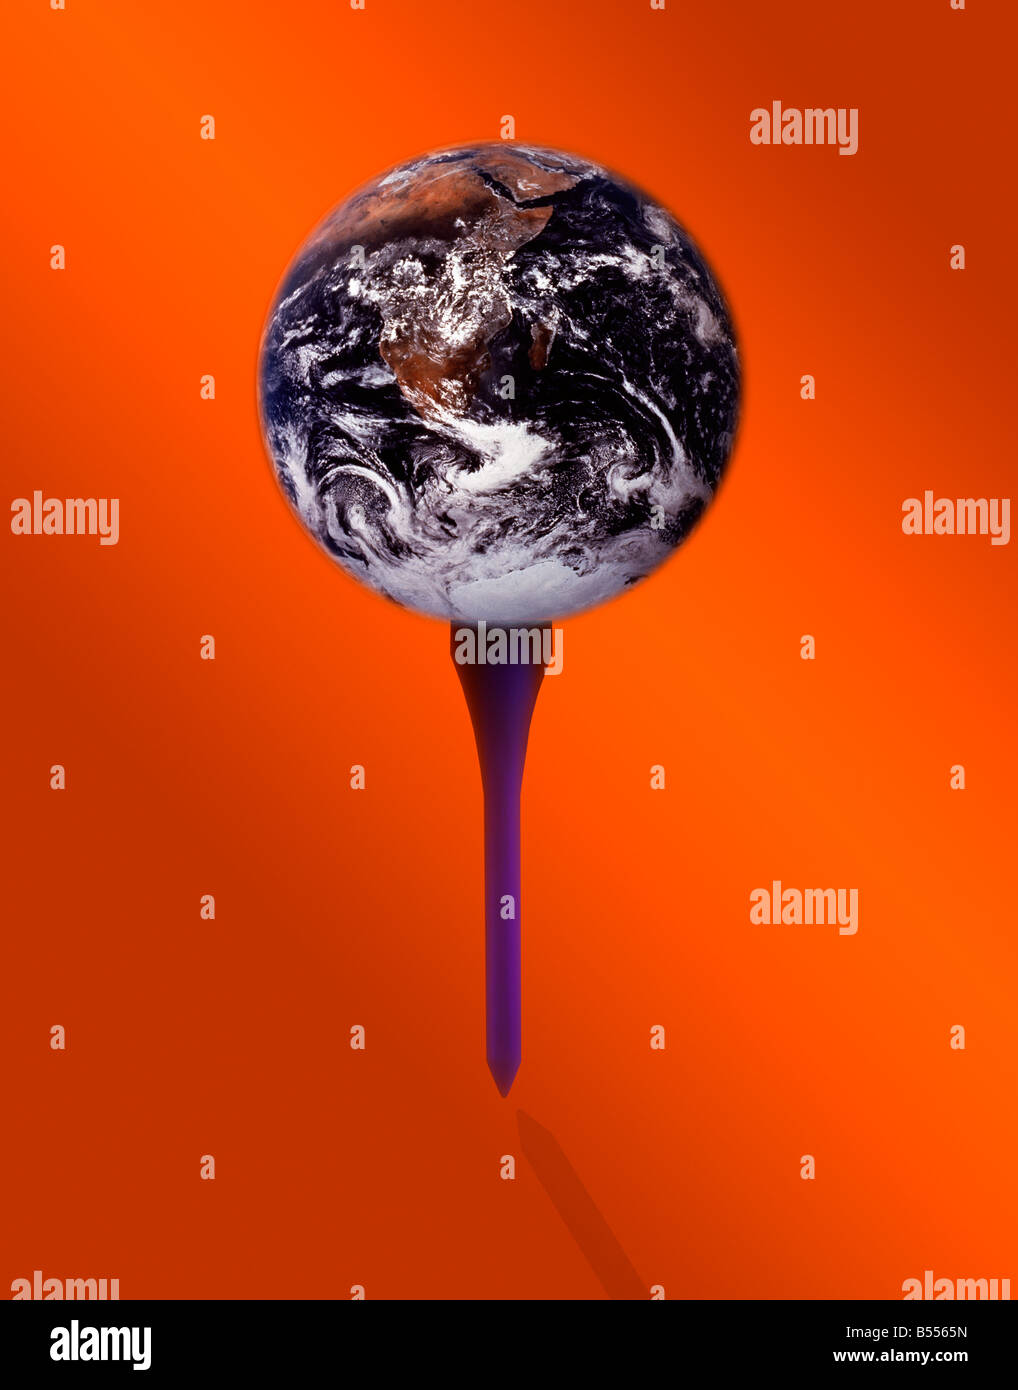 Konzeptionellen Auslegung der Erde aus dem Weltall auf einem Golf-Abschlag mit einem orangefarbenen Hintergrund positioniert Stockfoto